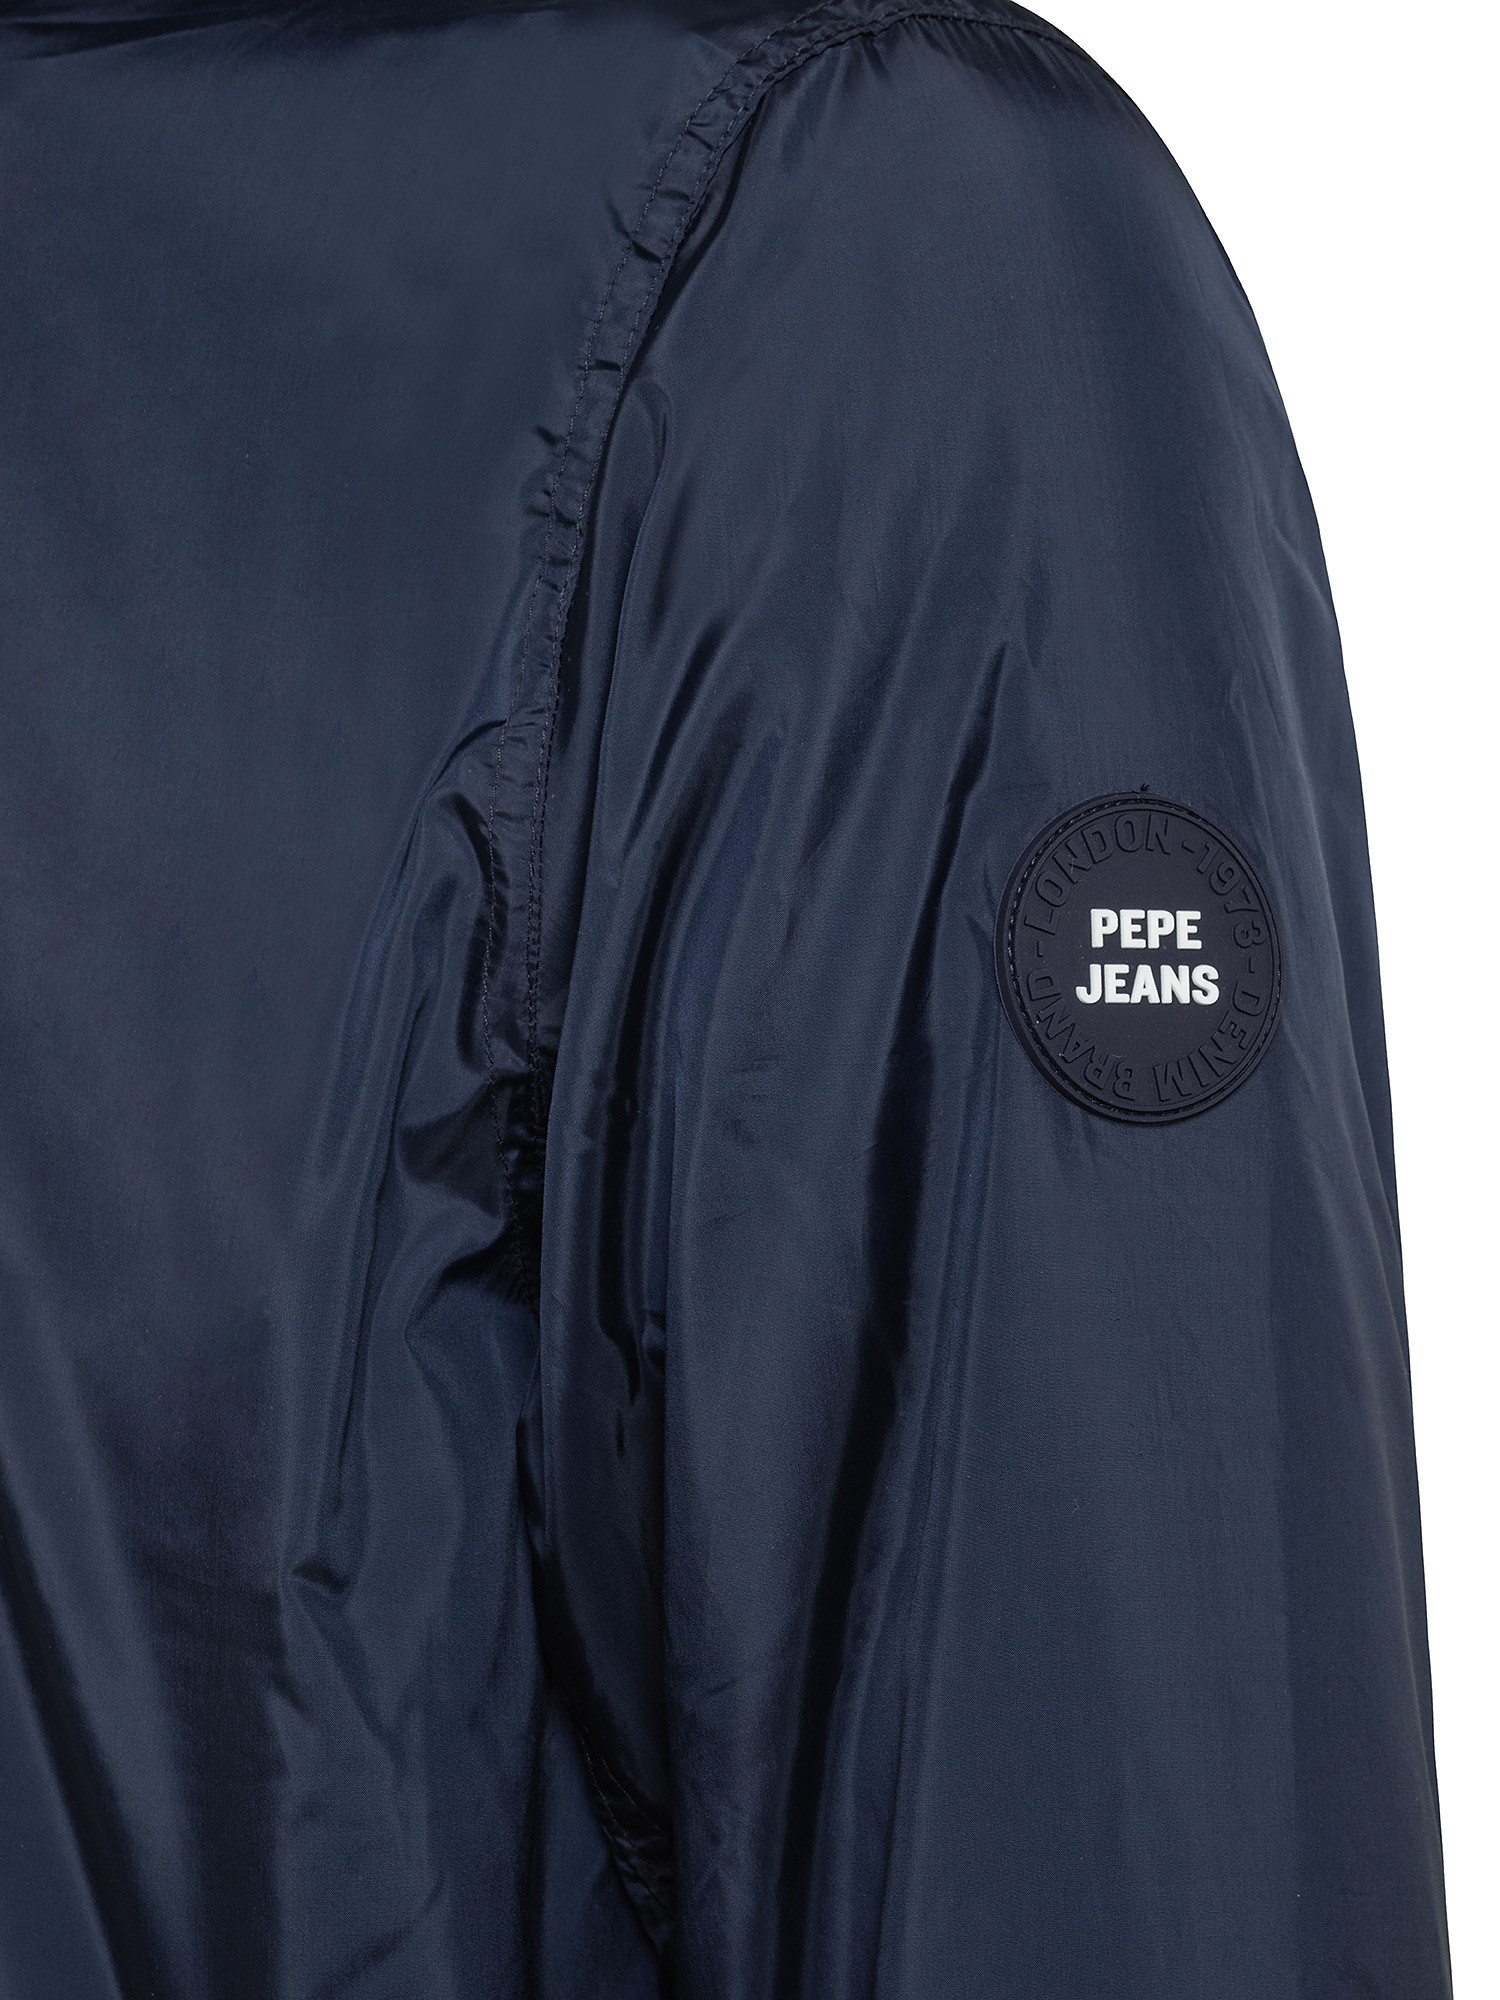 Jake back zip jacket, Dark Blue, large image number 2